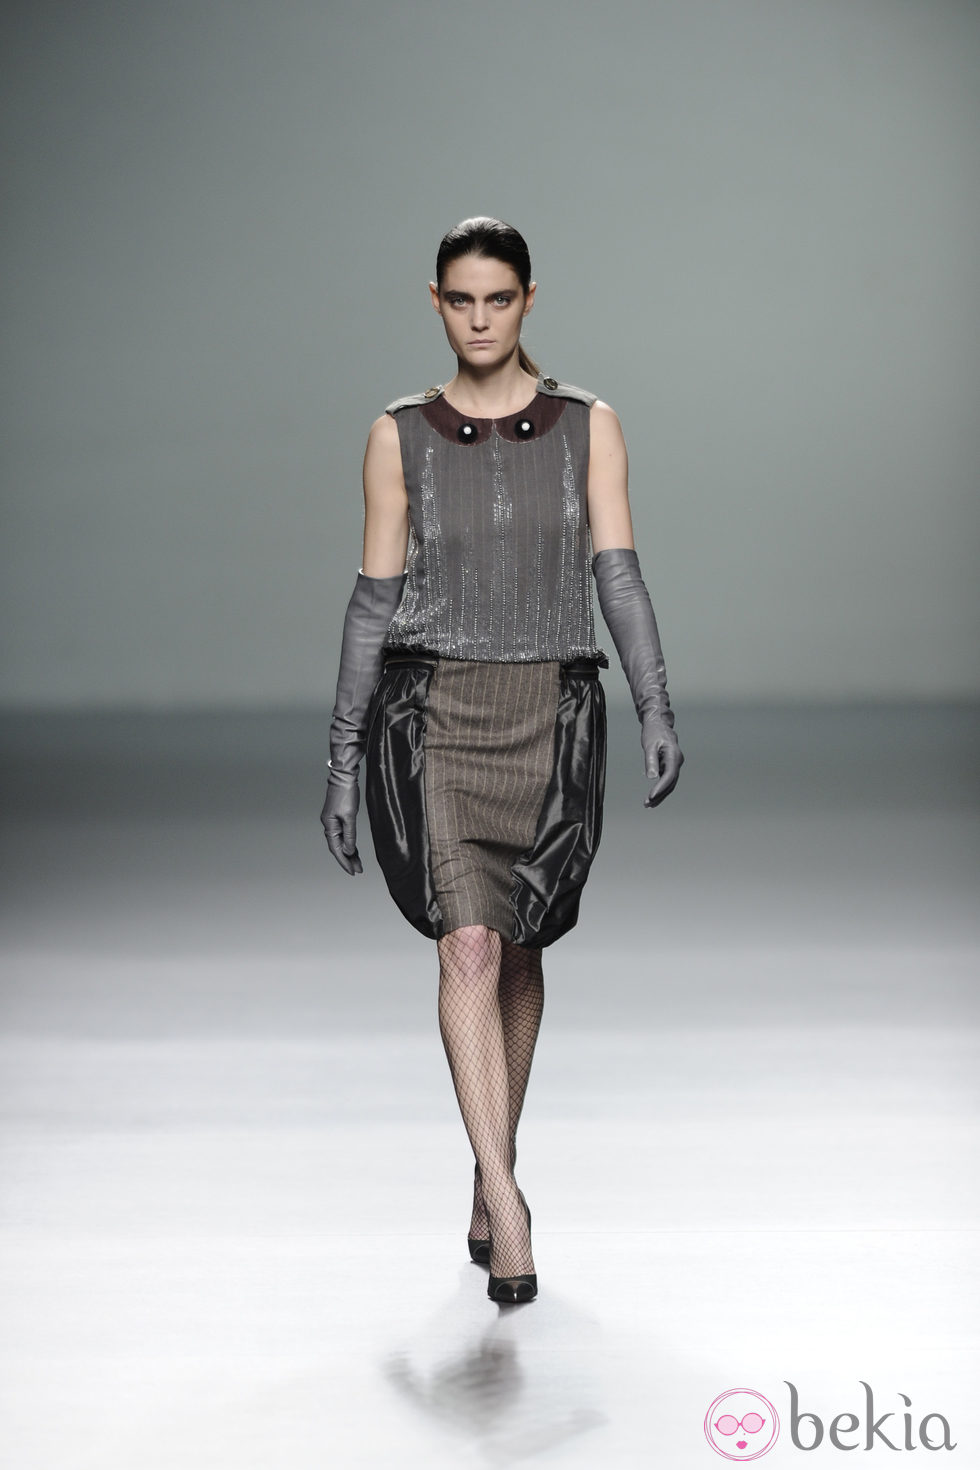 Vestido con falda globo de la colección otoño/invierno 2013/2014 de Victorio y Lucchino en Madrid Fashion Week